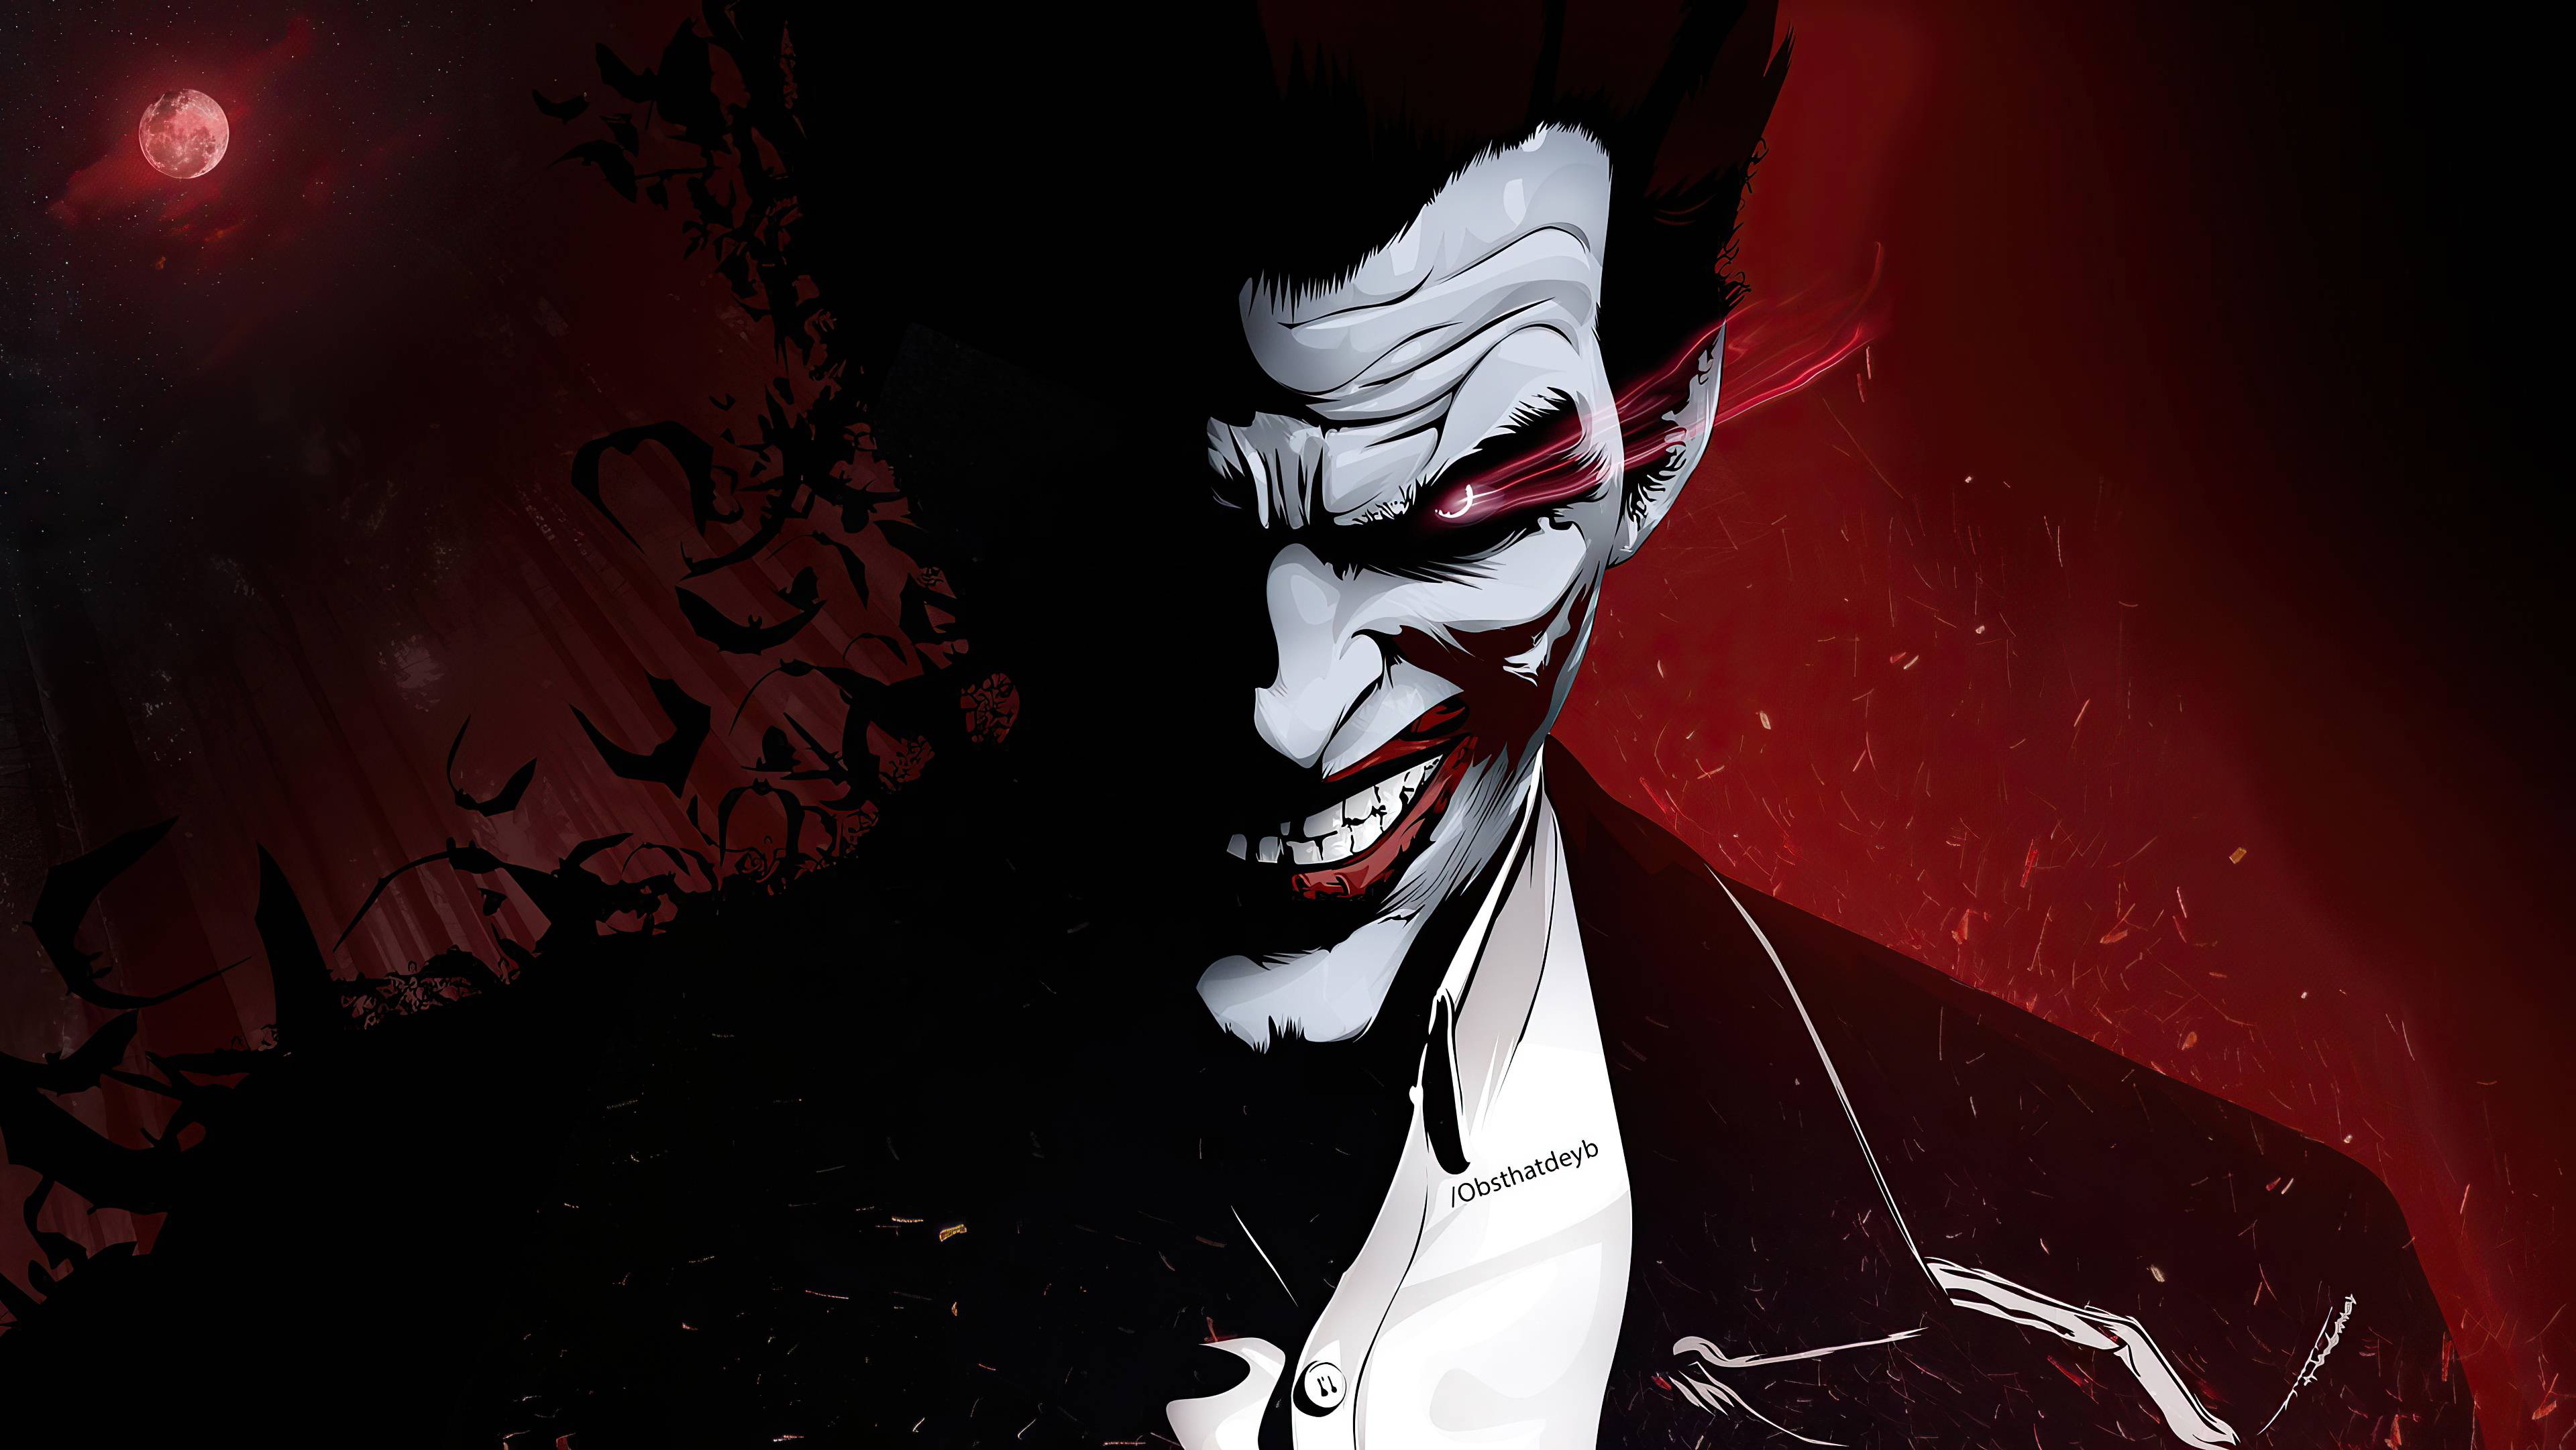 fireforce #joker  Joker wallpapers, Anime artwork wallpaper